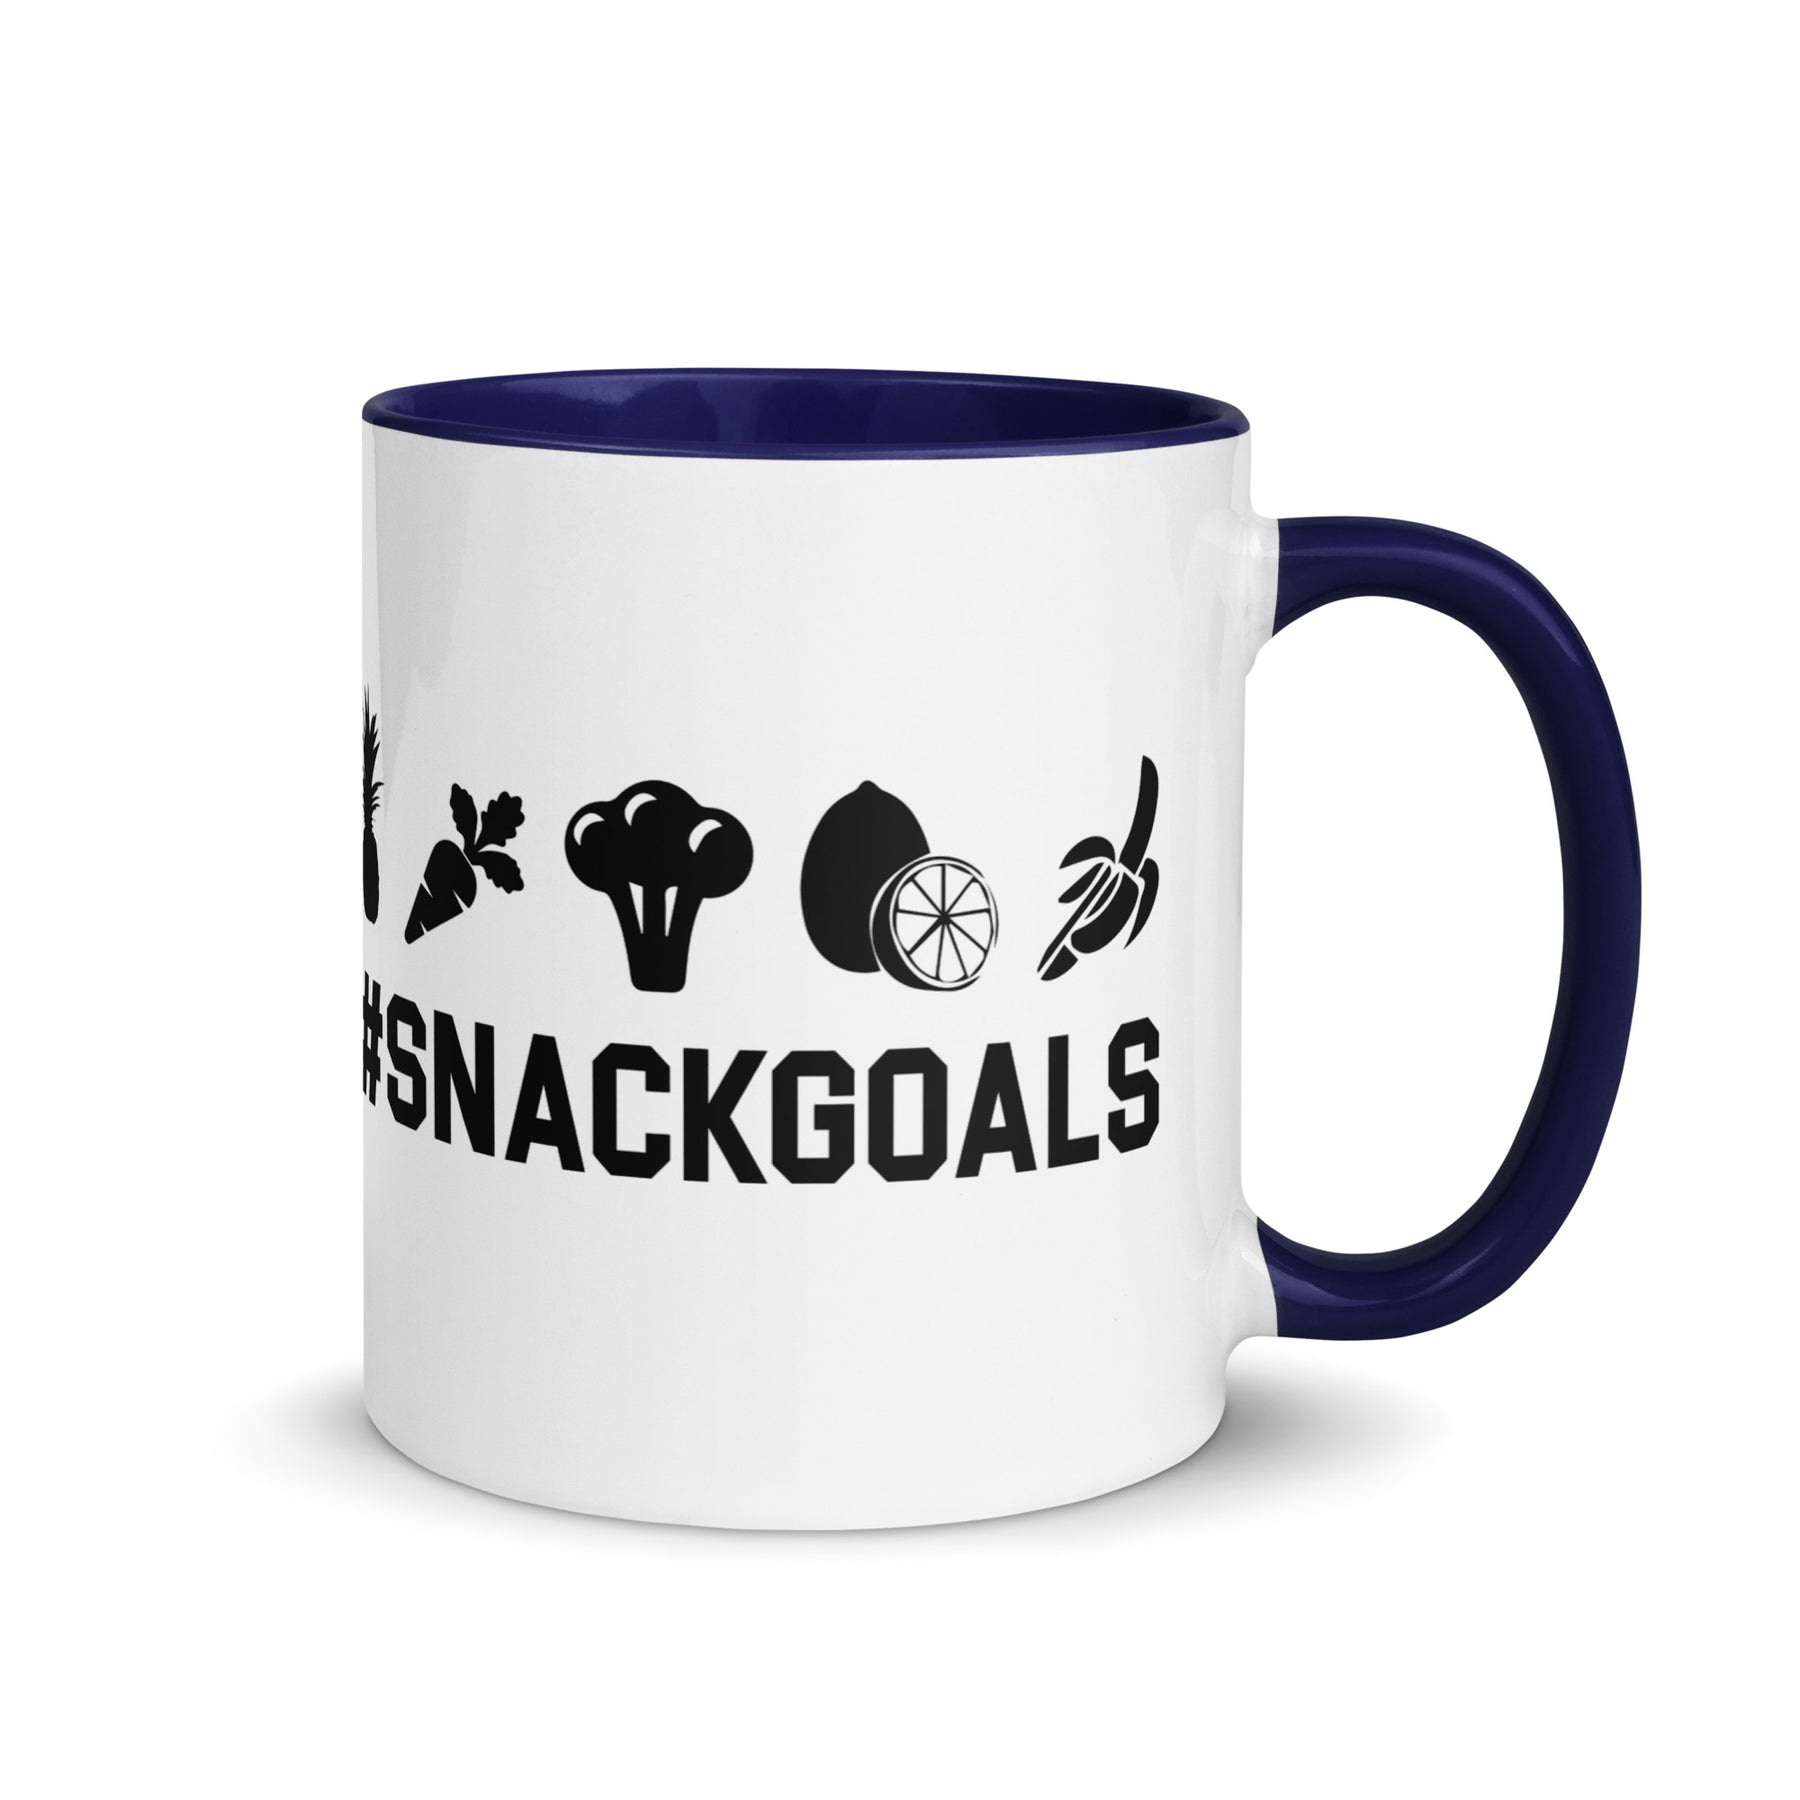 SNACK GOALS Mug with Color Inside